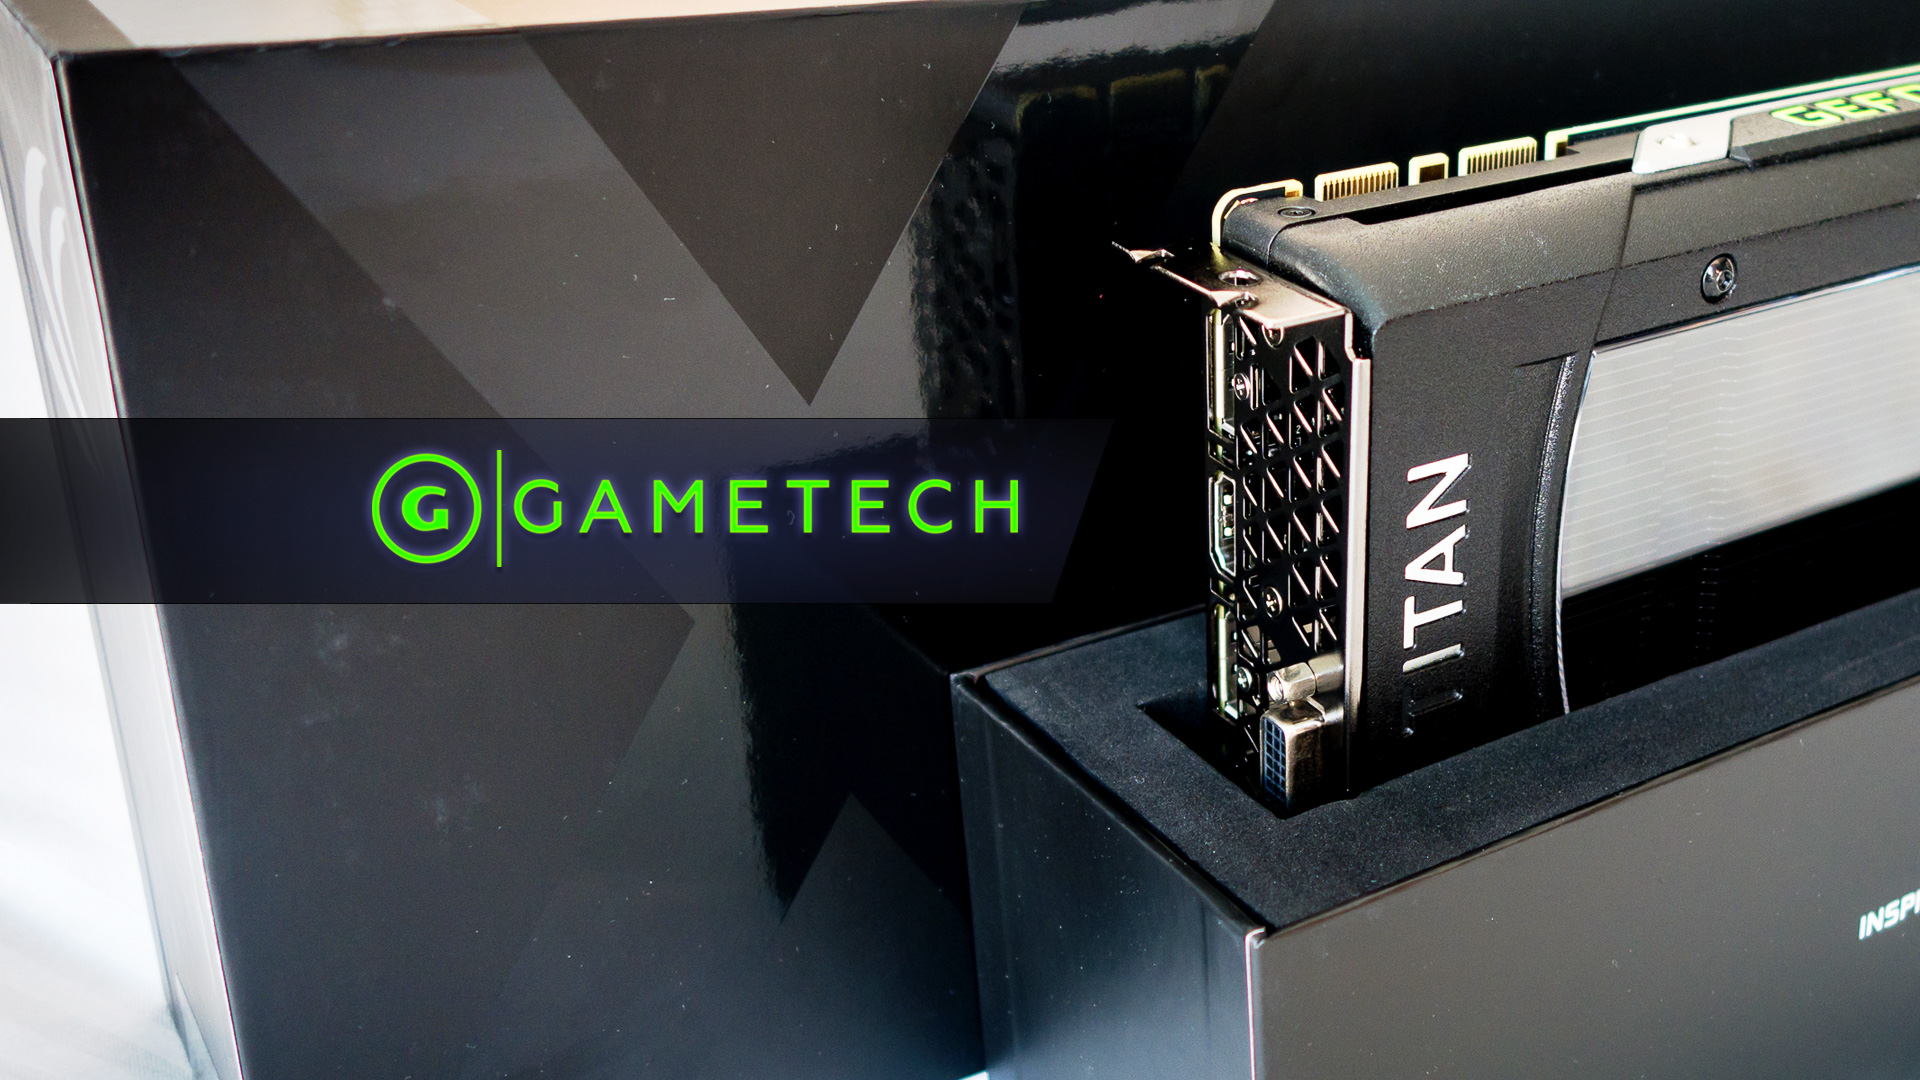 Review: Nvidia's $999 GTX Titan X Shines in 4K